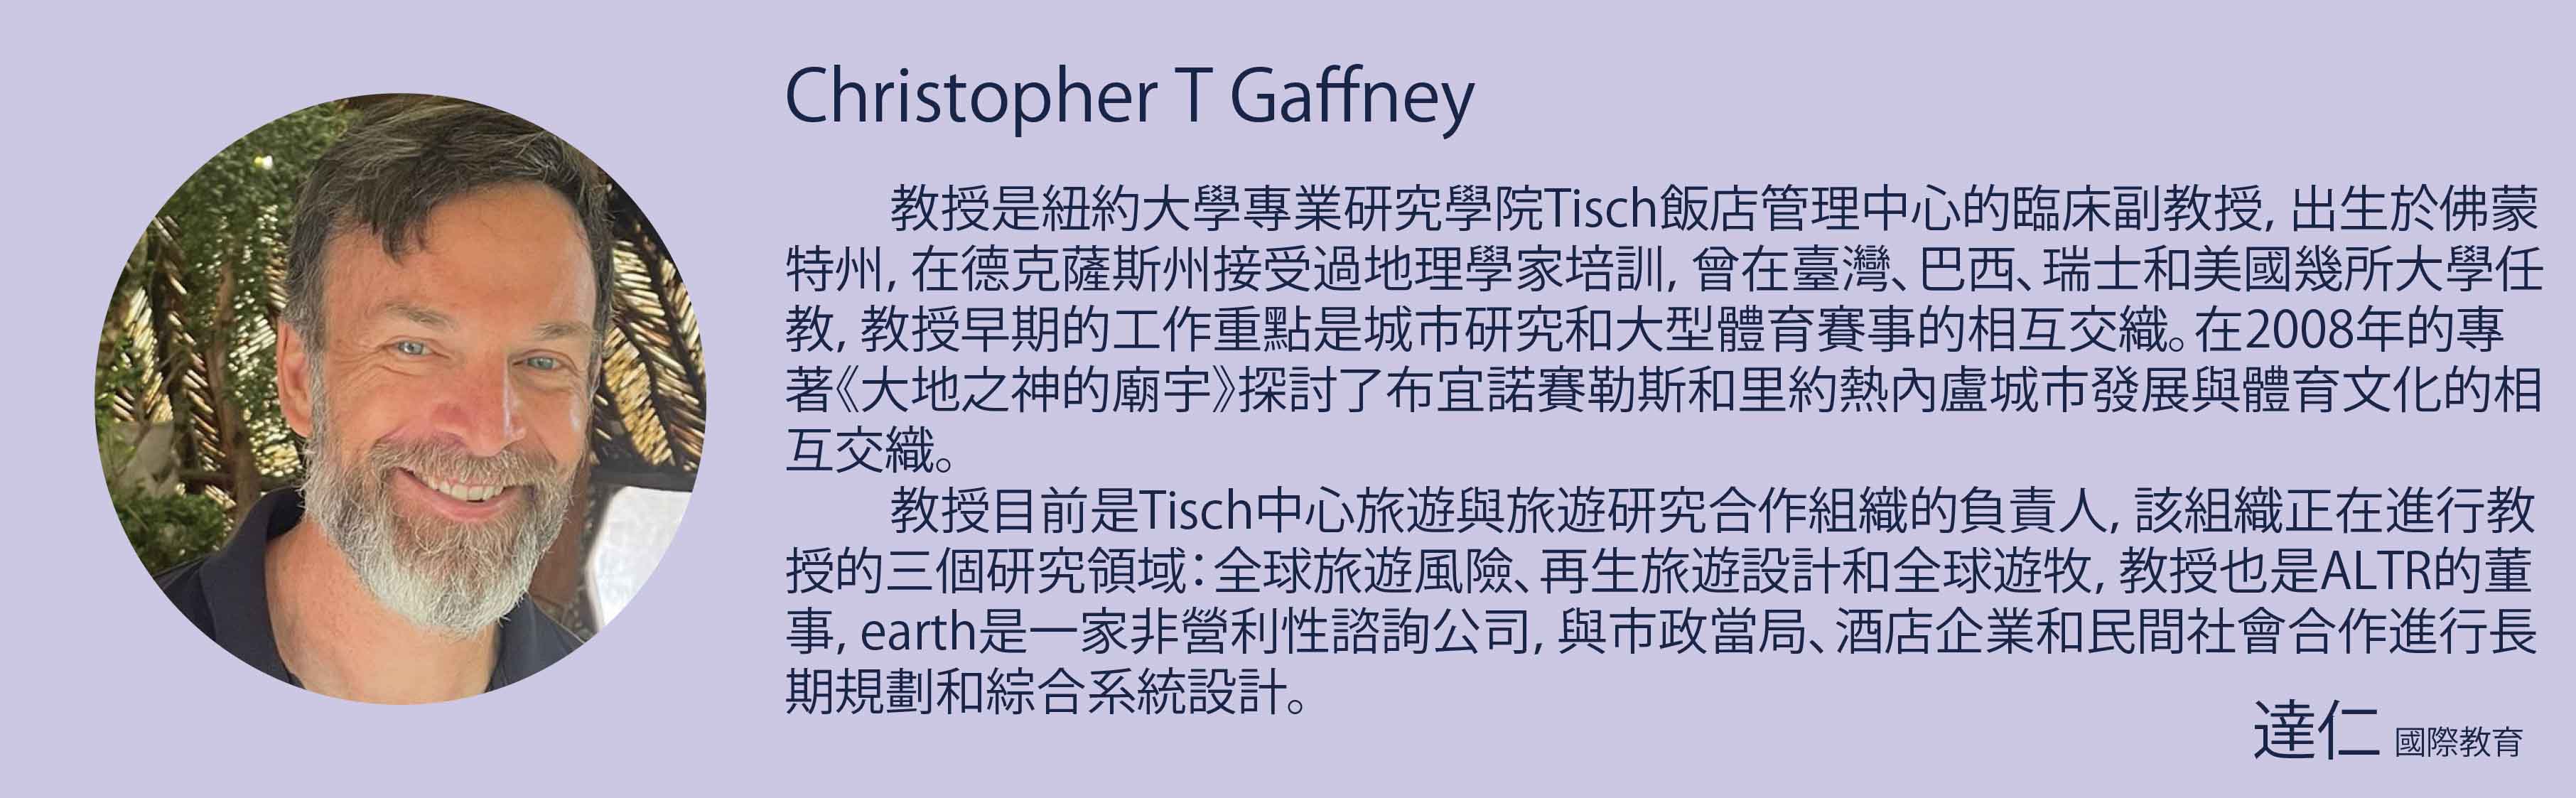 Christopher T Gaffney